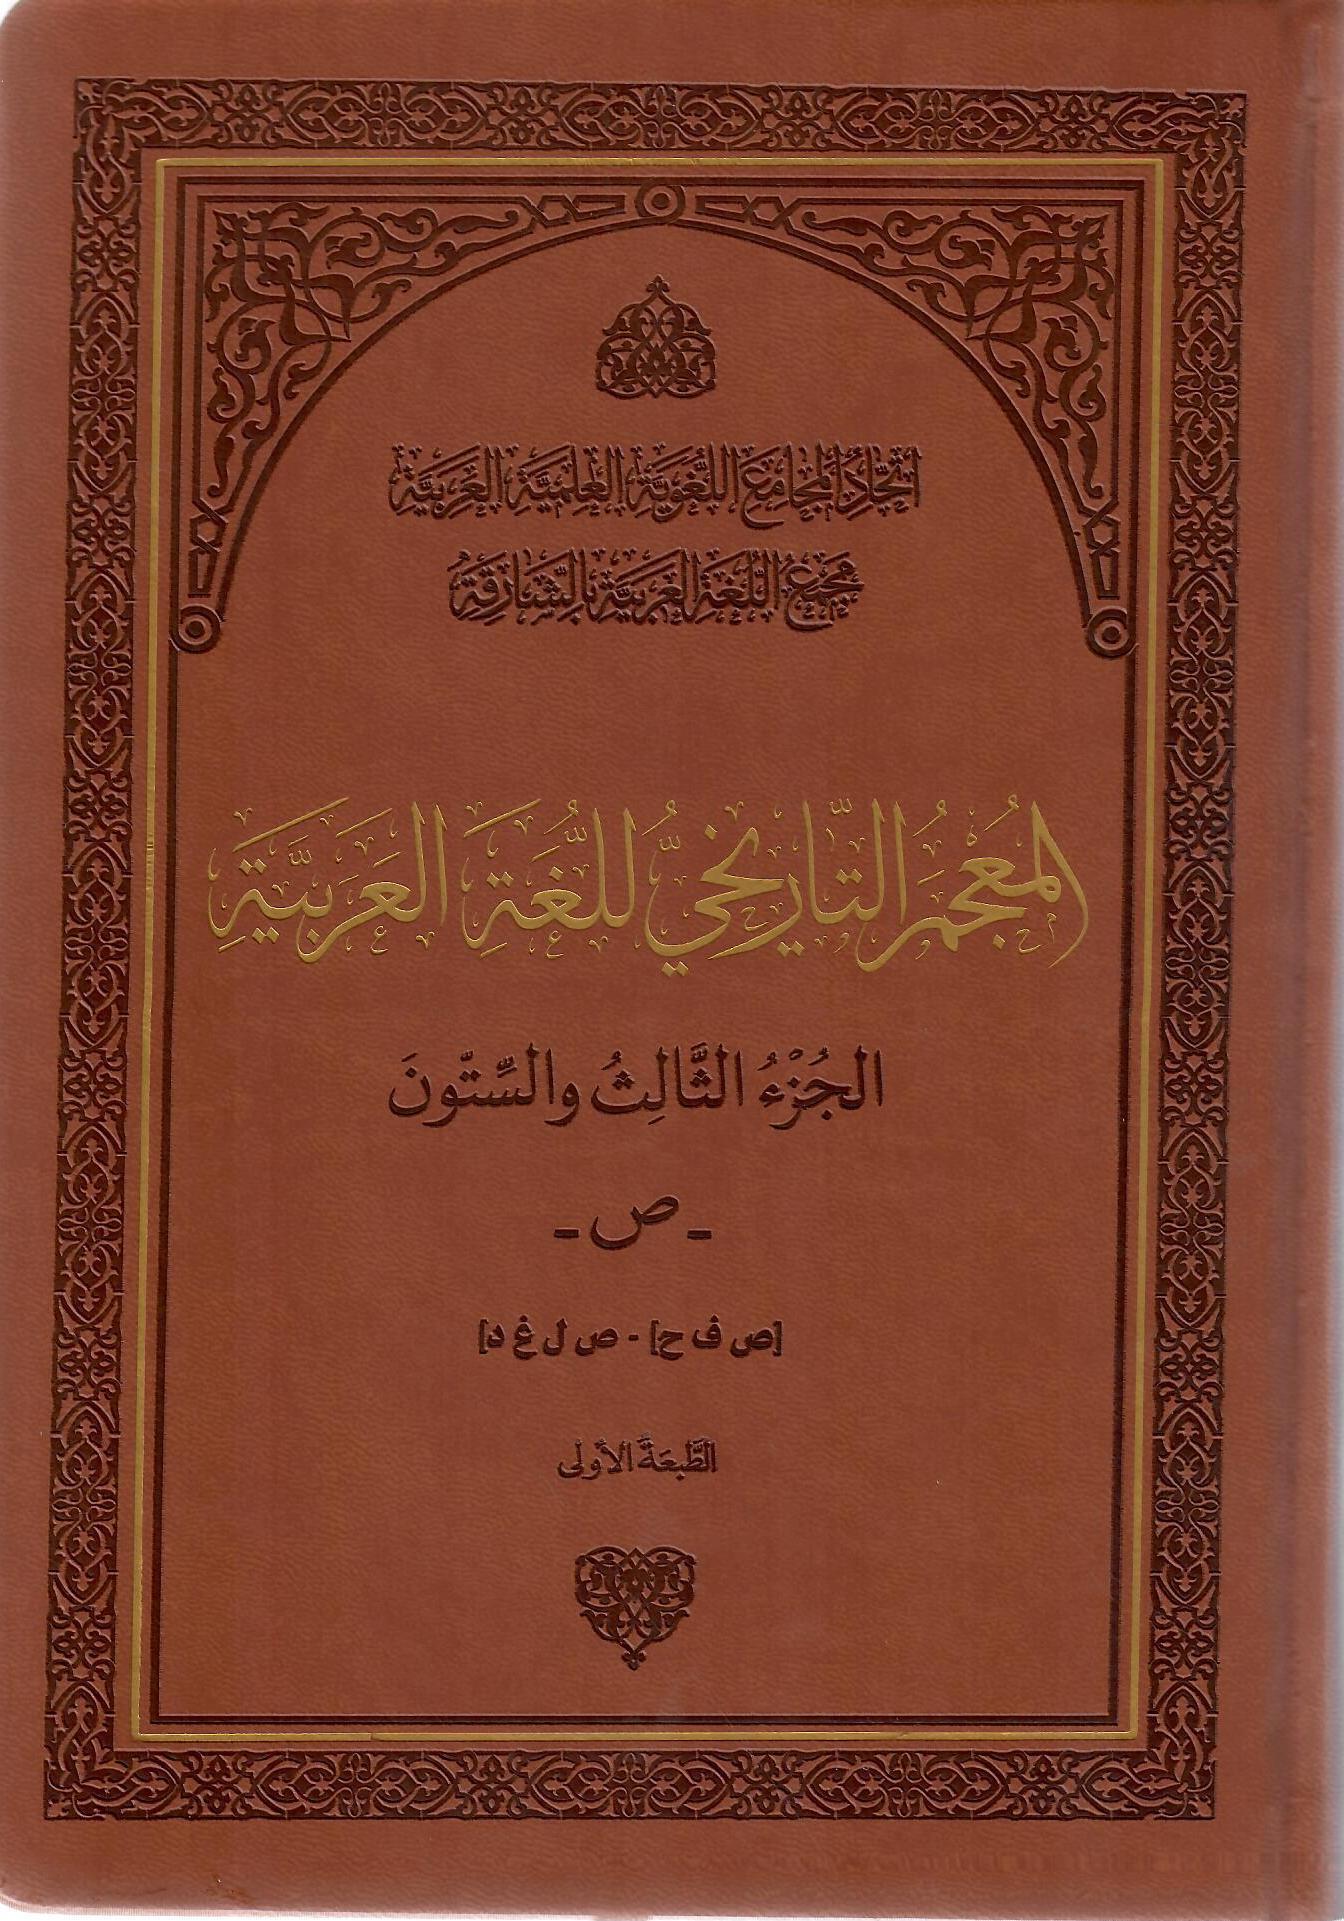 المعجم التاريخي للغة العربية الجزء الثالث والستون